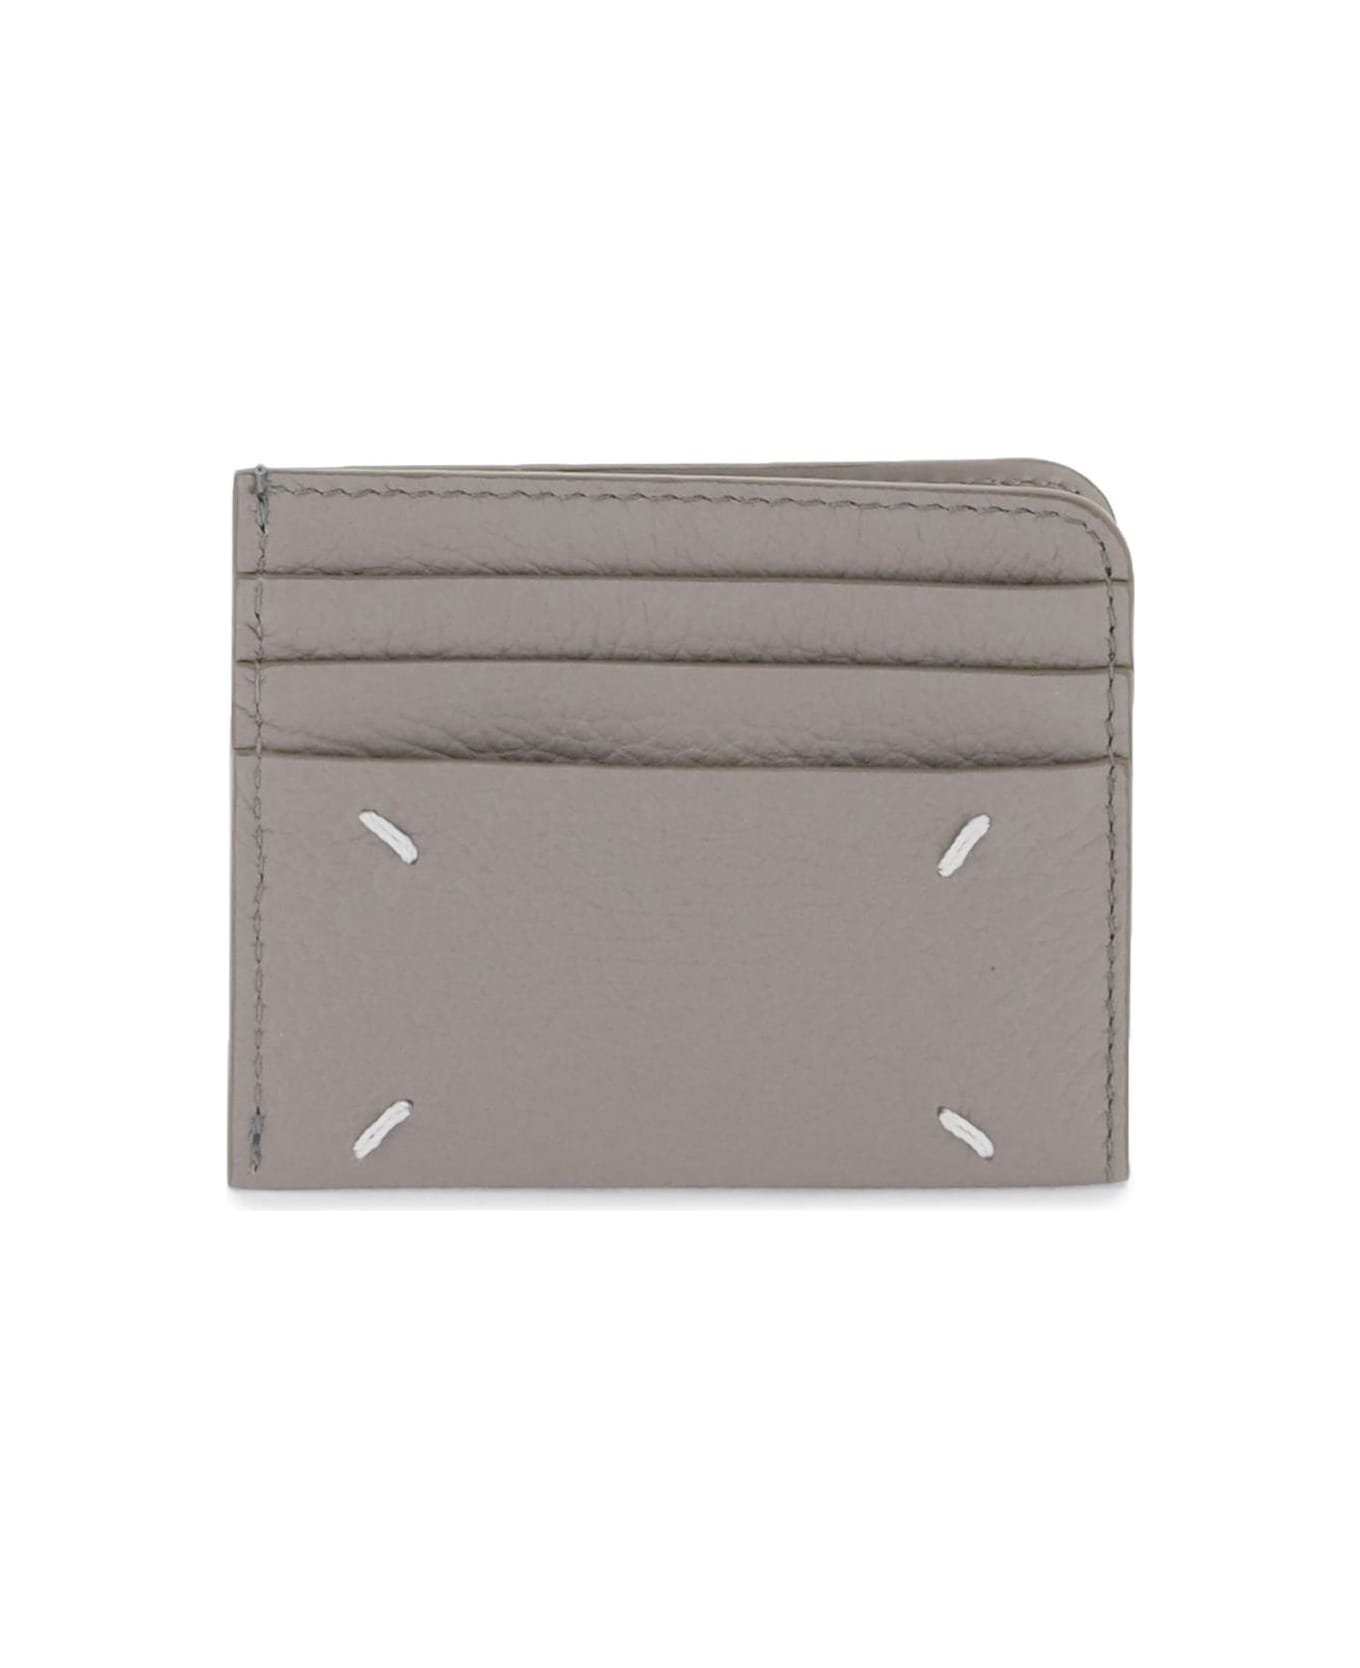 Maison Margiela Leather Card Holder - SMOKE (Grey)